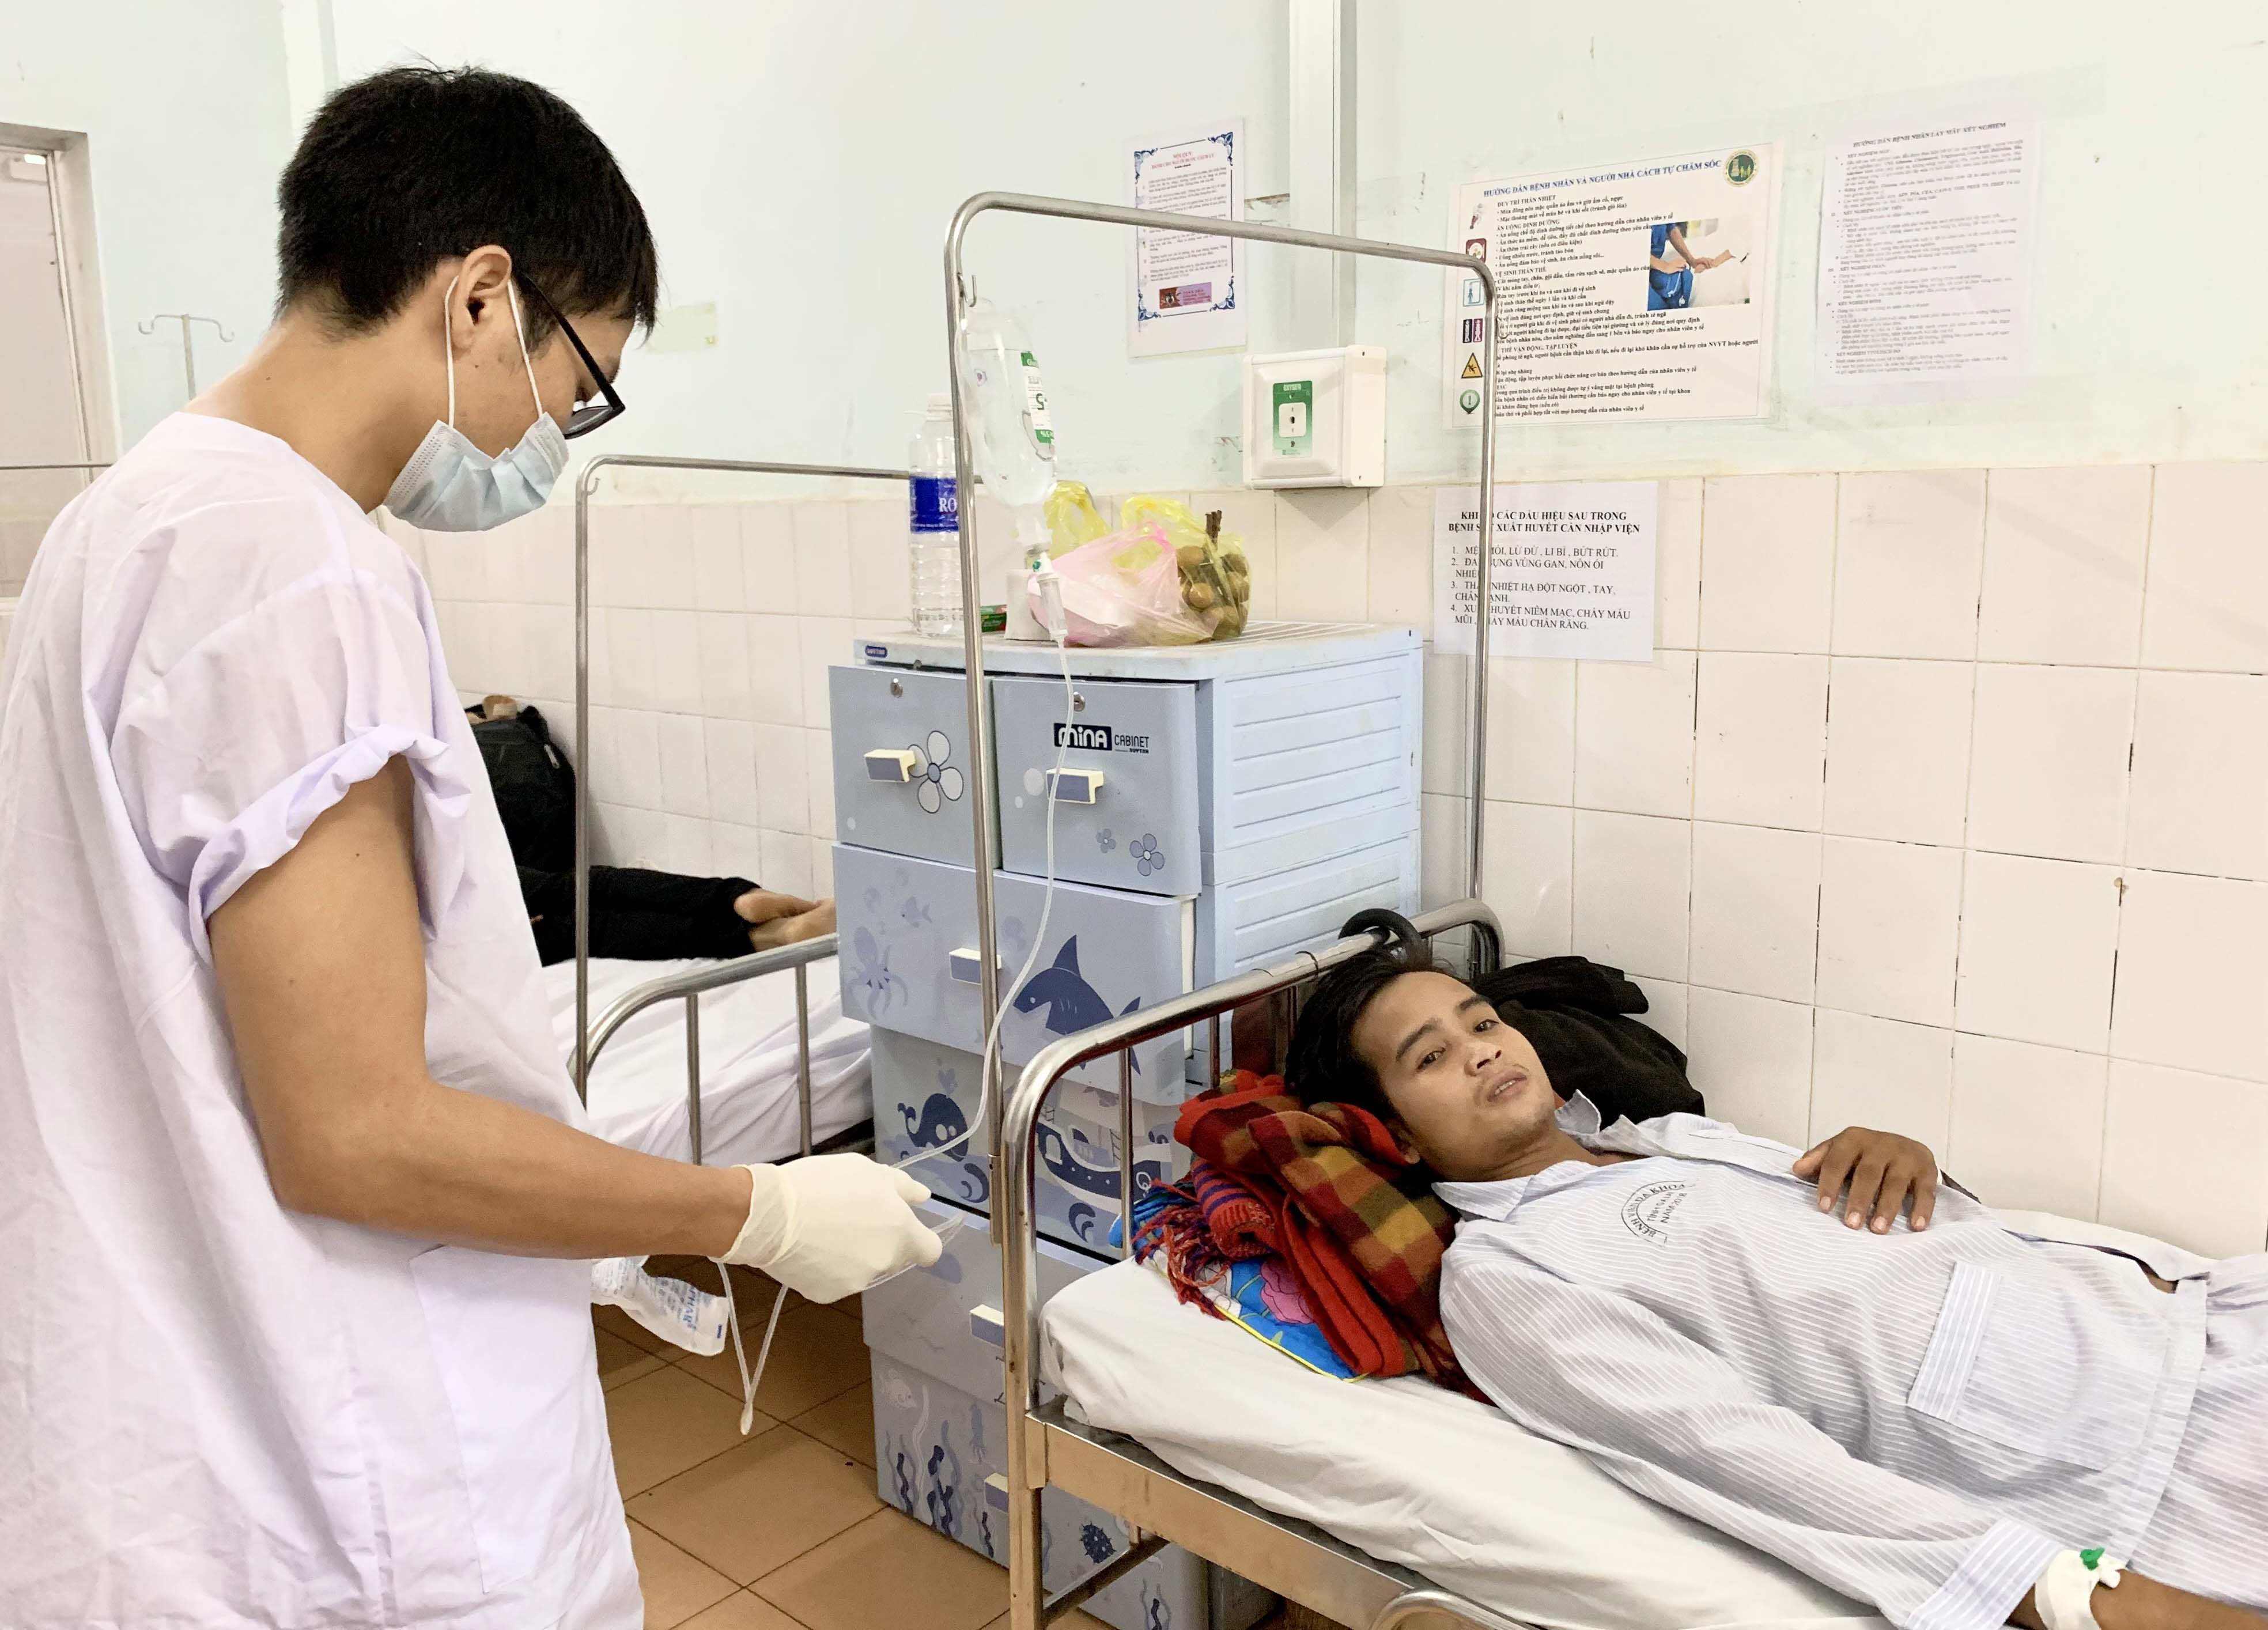 Chăm sóc bệnh nhân SXH tại Khoa Bệnh nhiệt đới (Bệnh viện Đa khoa tỉnh). Ảnh: Như Nguyện